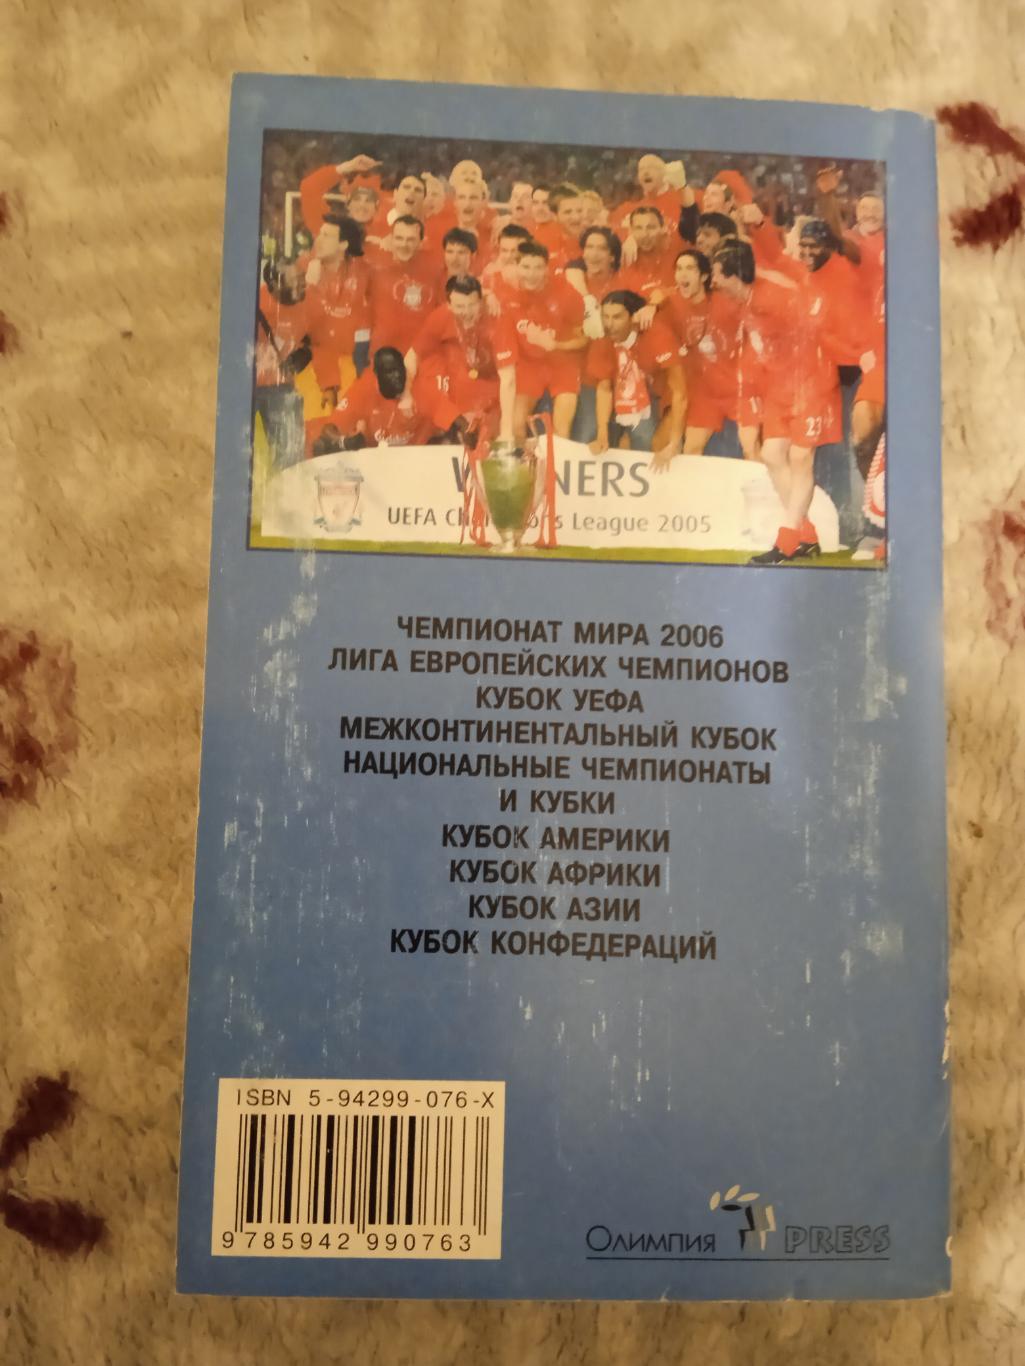 И.Гольдес.Мировой футбол 2006 (сезон 2004-2005).Москва.Олимпия-Пресс 2006. 1